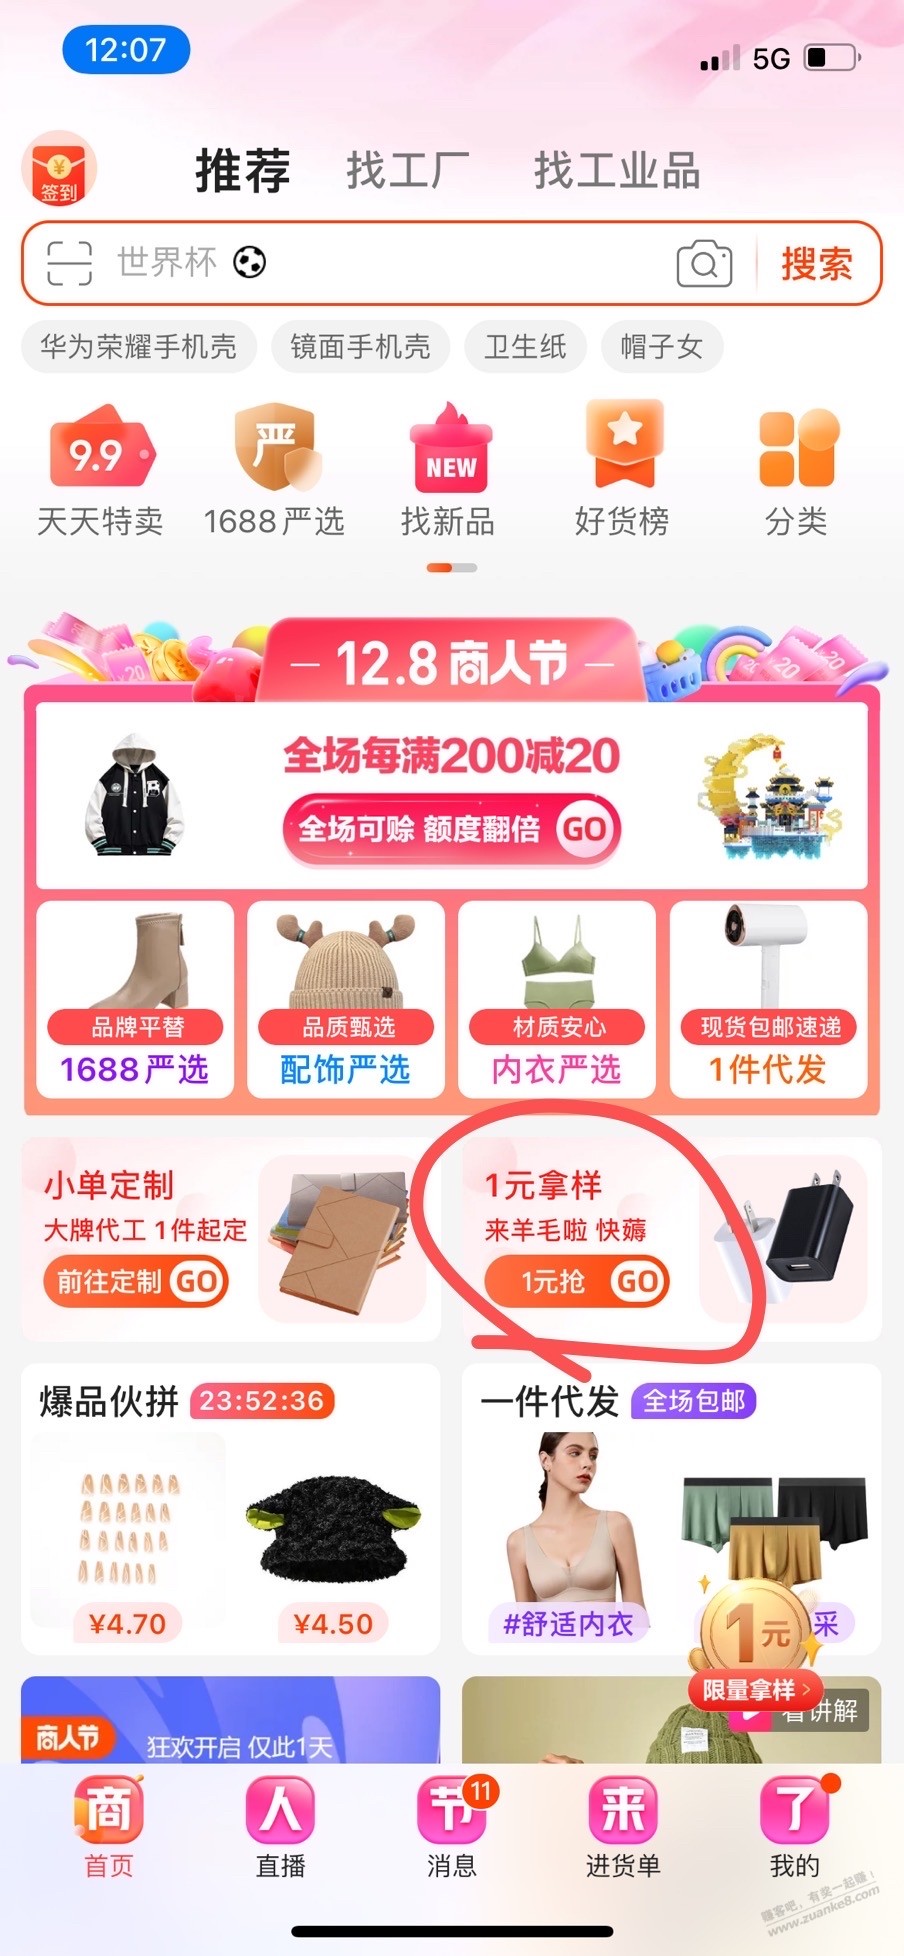 1688商人节1元购-惠小助(52huixz.com)